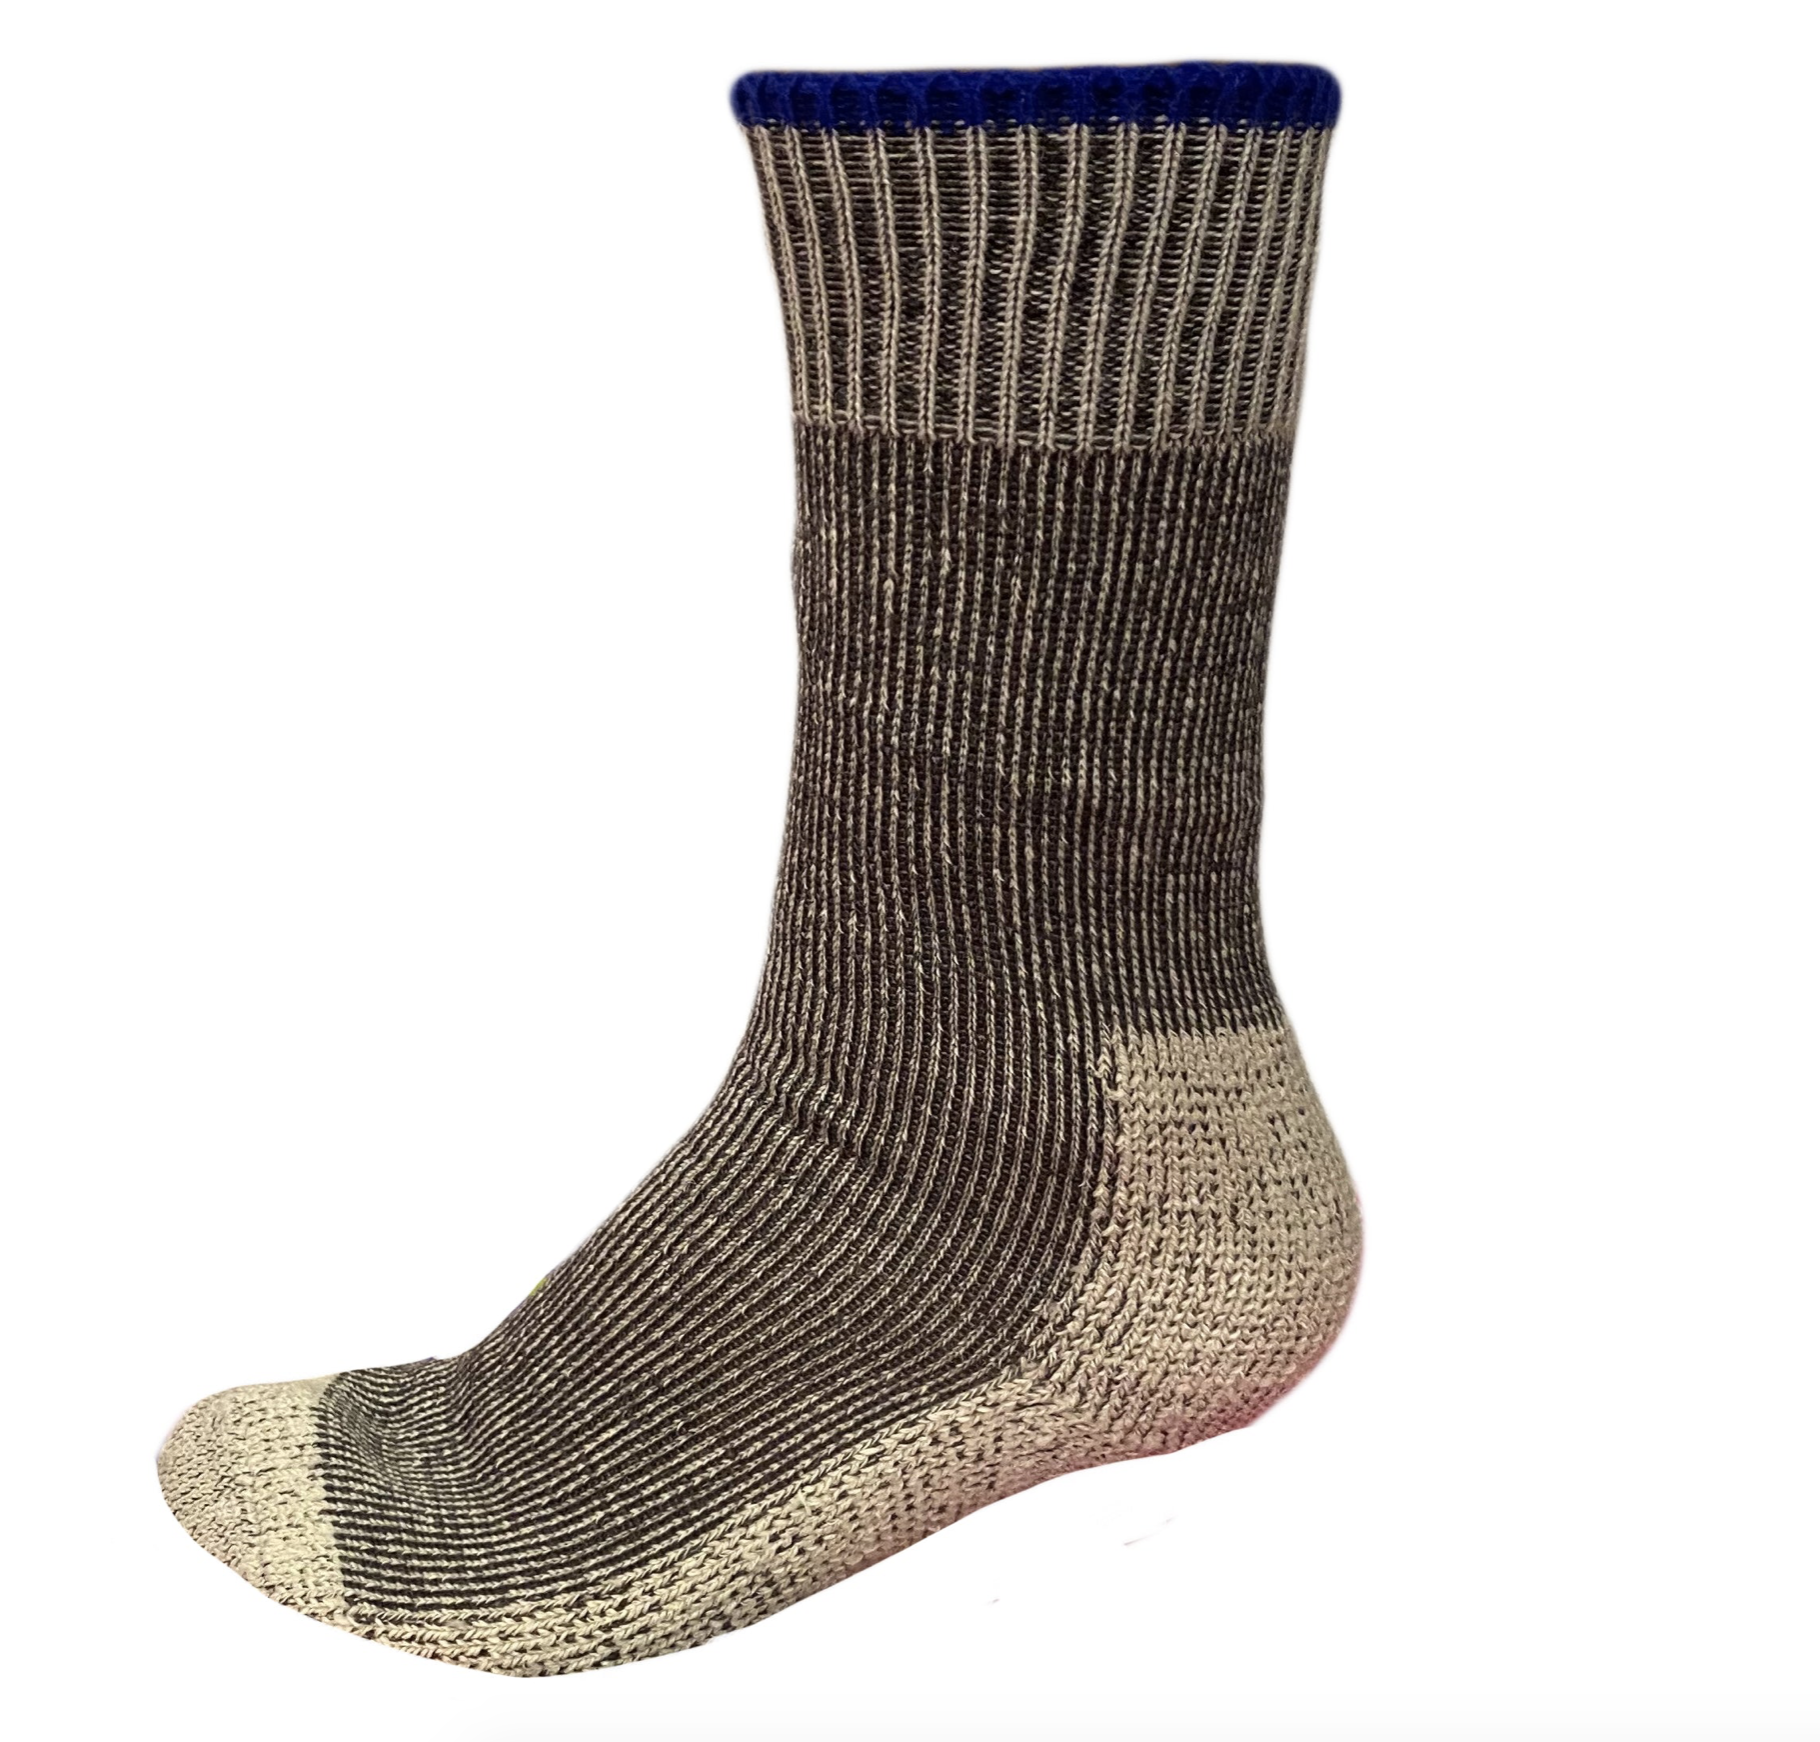 Summer Work Socks in Wool (Pack of 3)